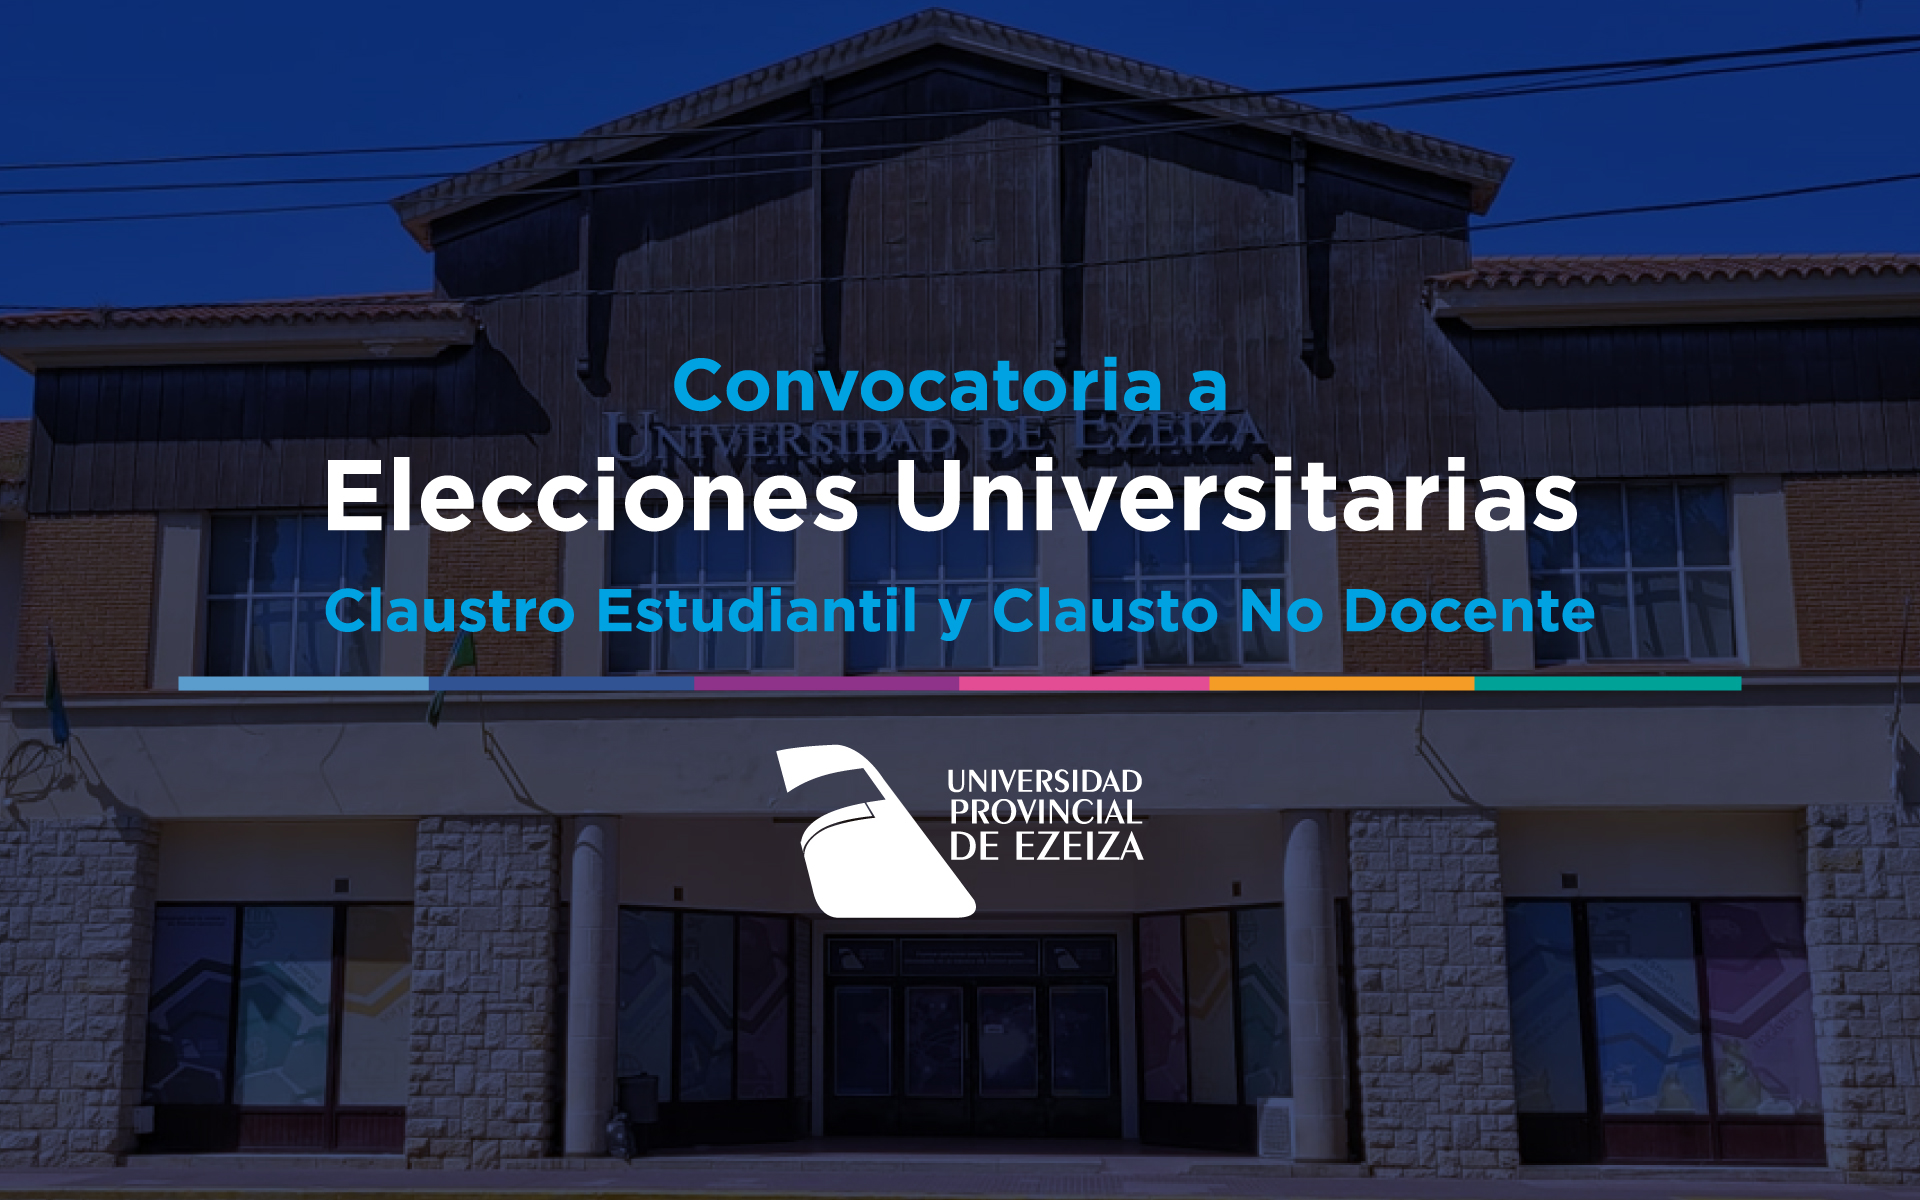 Convocatoria a Elecciones Universitarias – Claustro Estudiantil y Claustro No docente